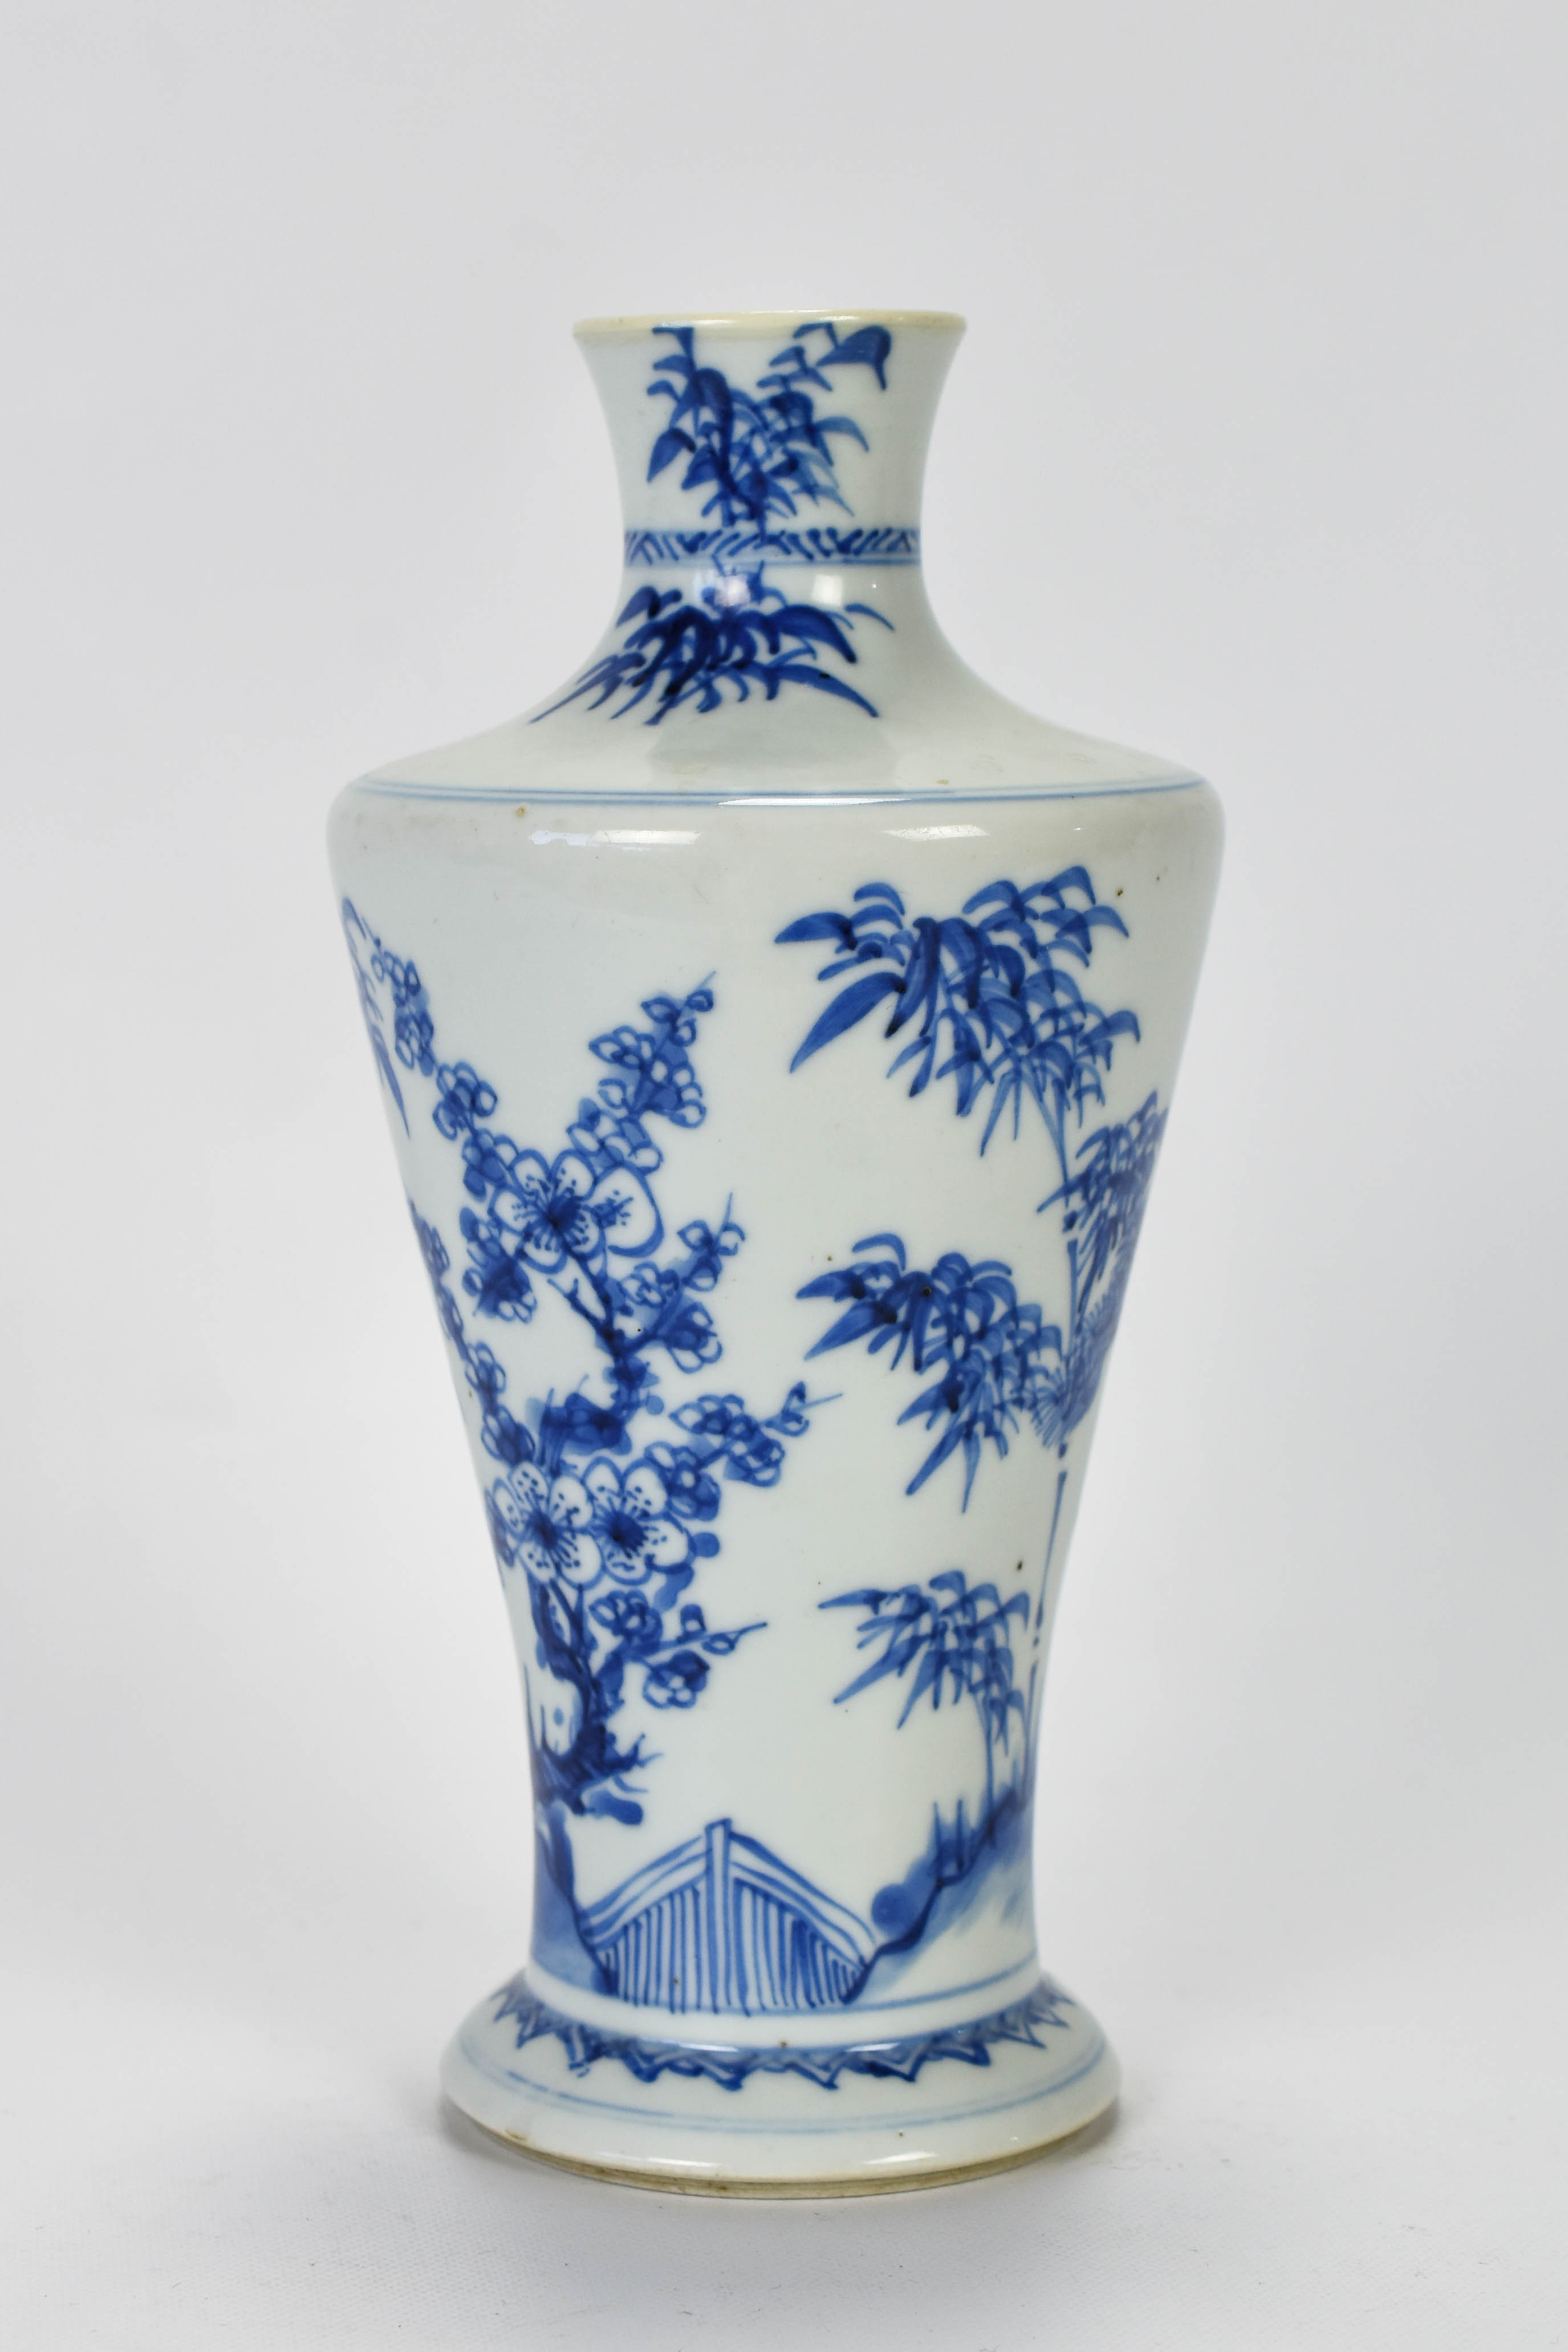 Antique 19thC Japanese Blue & White Bottle Vase